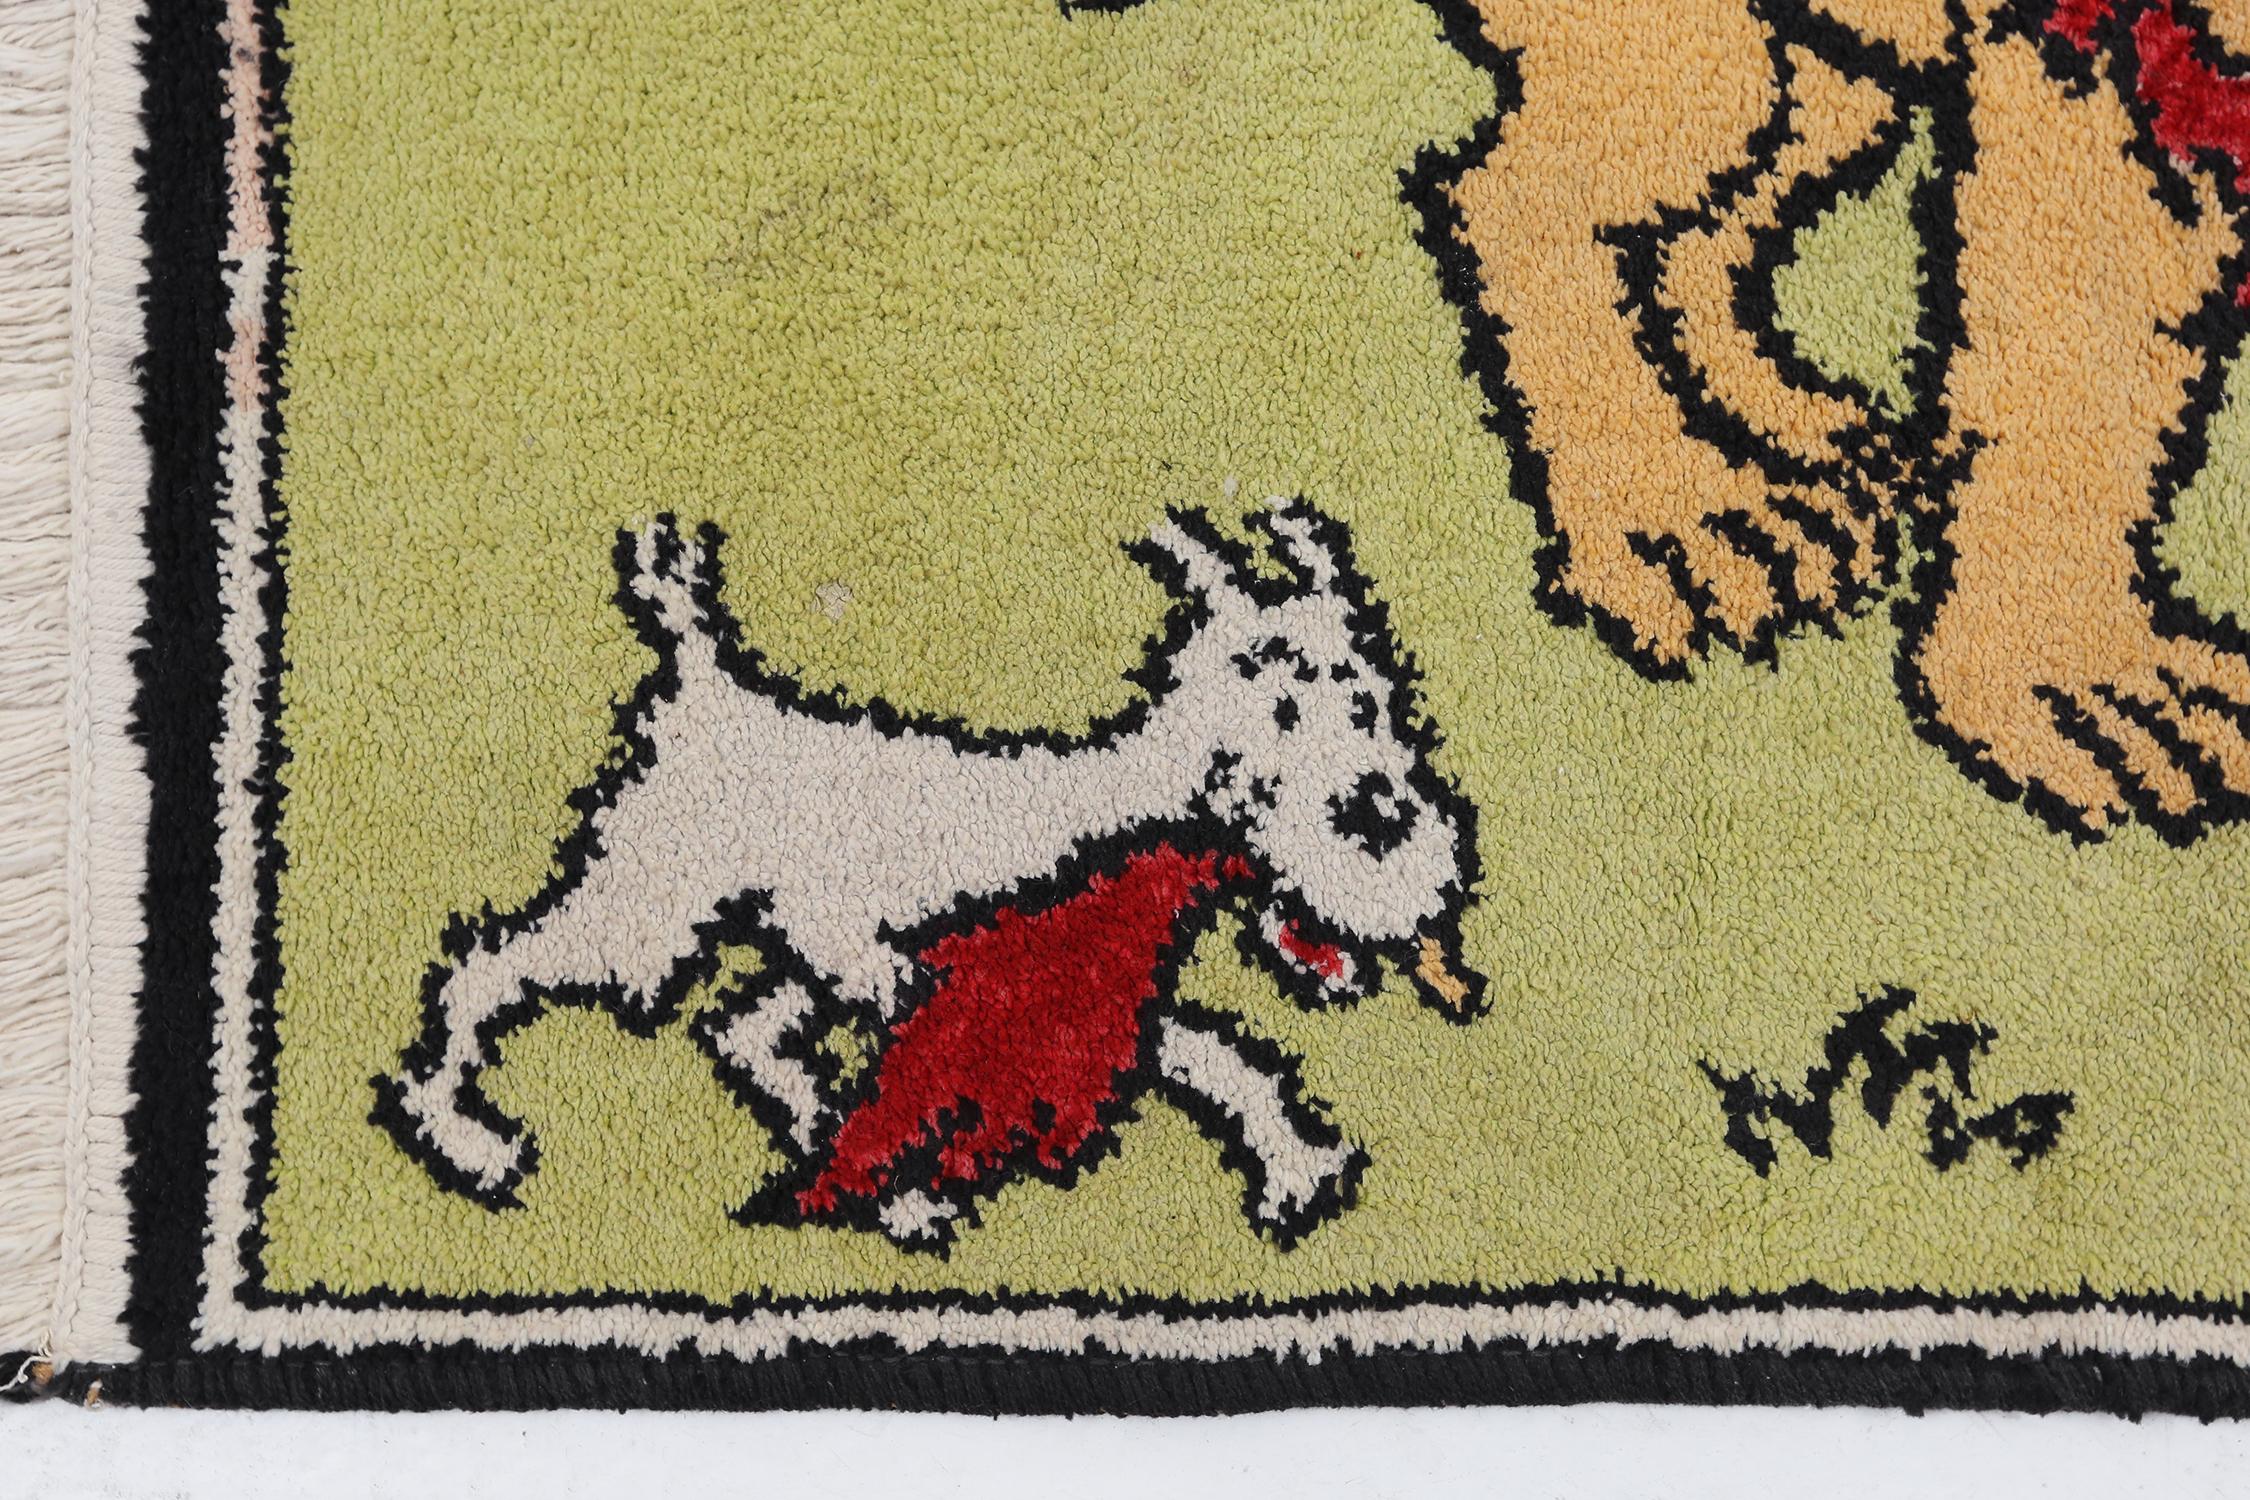 Seltener Teppich von Tintin in Afrika. Ein seltenes Sammlerstück oder für ein Kinderzimmer.